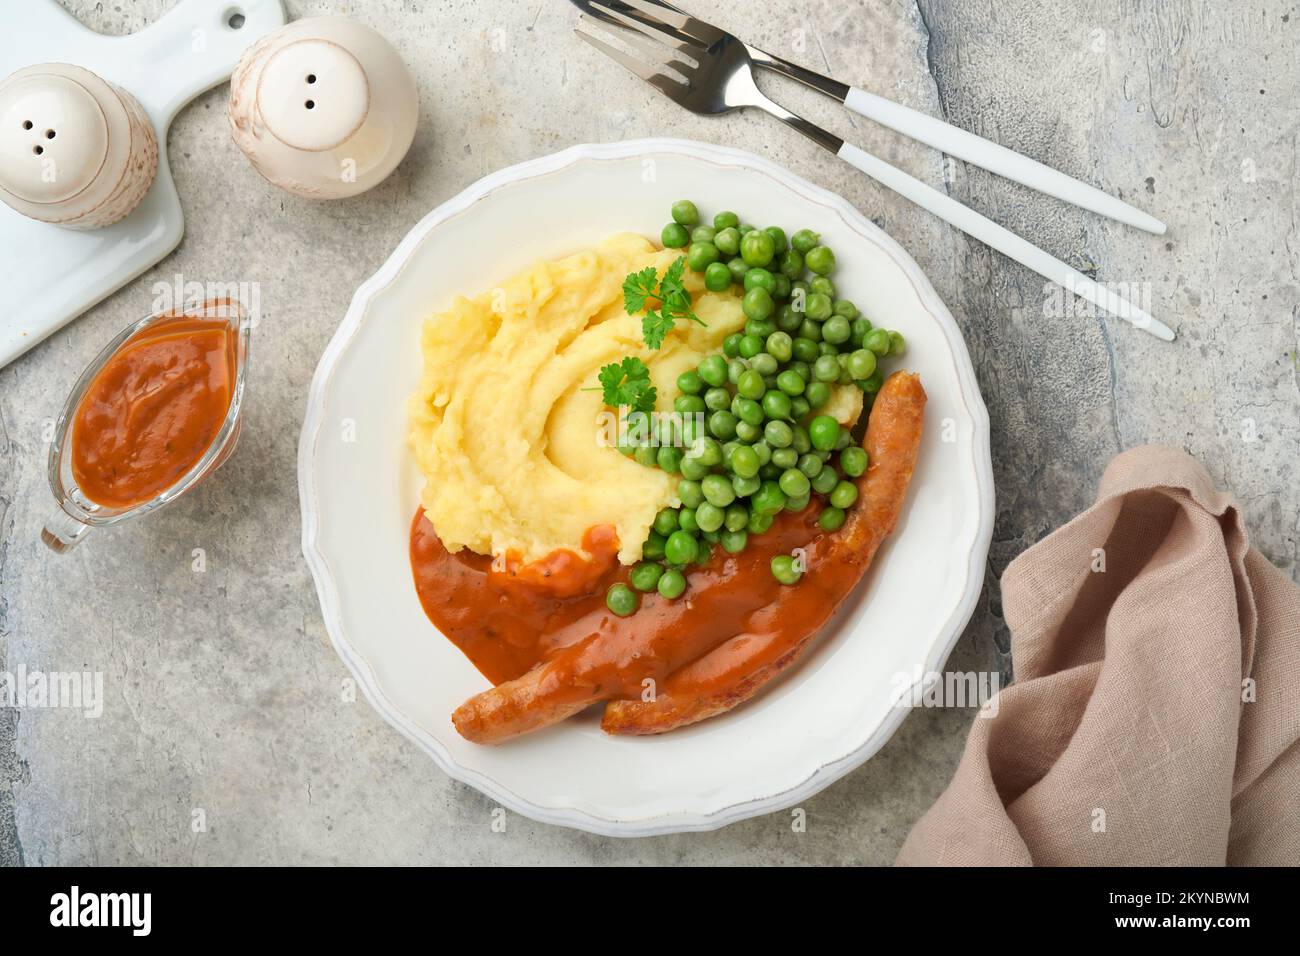 Knaller und Püree. Gegrillte Würstchen mit Kartoffelpüree und grüner Erbse auf weißem Teller auf grauem Hintergrund. Traditionelles Gericht aus Großbritannien und Irland. BB Stockfoto